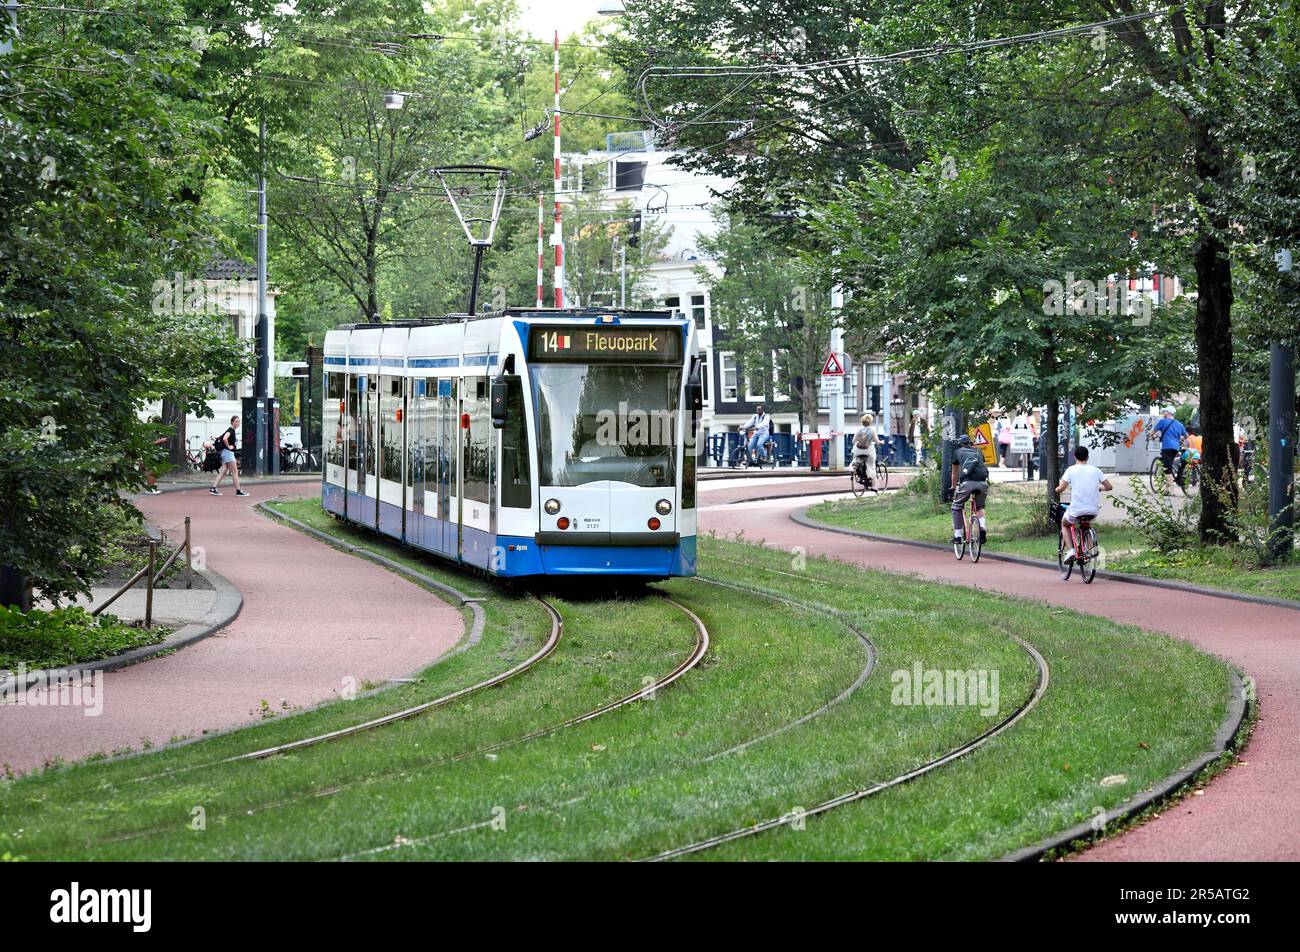 Un tramway serpente à travers Plantage Middenlaan, un couloir de transport vert (lignes de tramway, pistes cyclables et sentiers) à Wertheimpark, Amsterdam. Banque D'Images